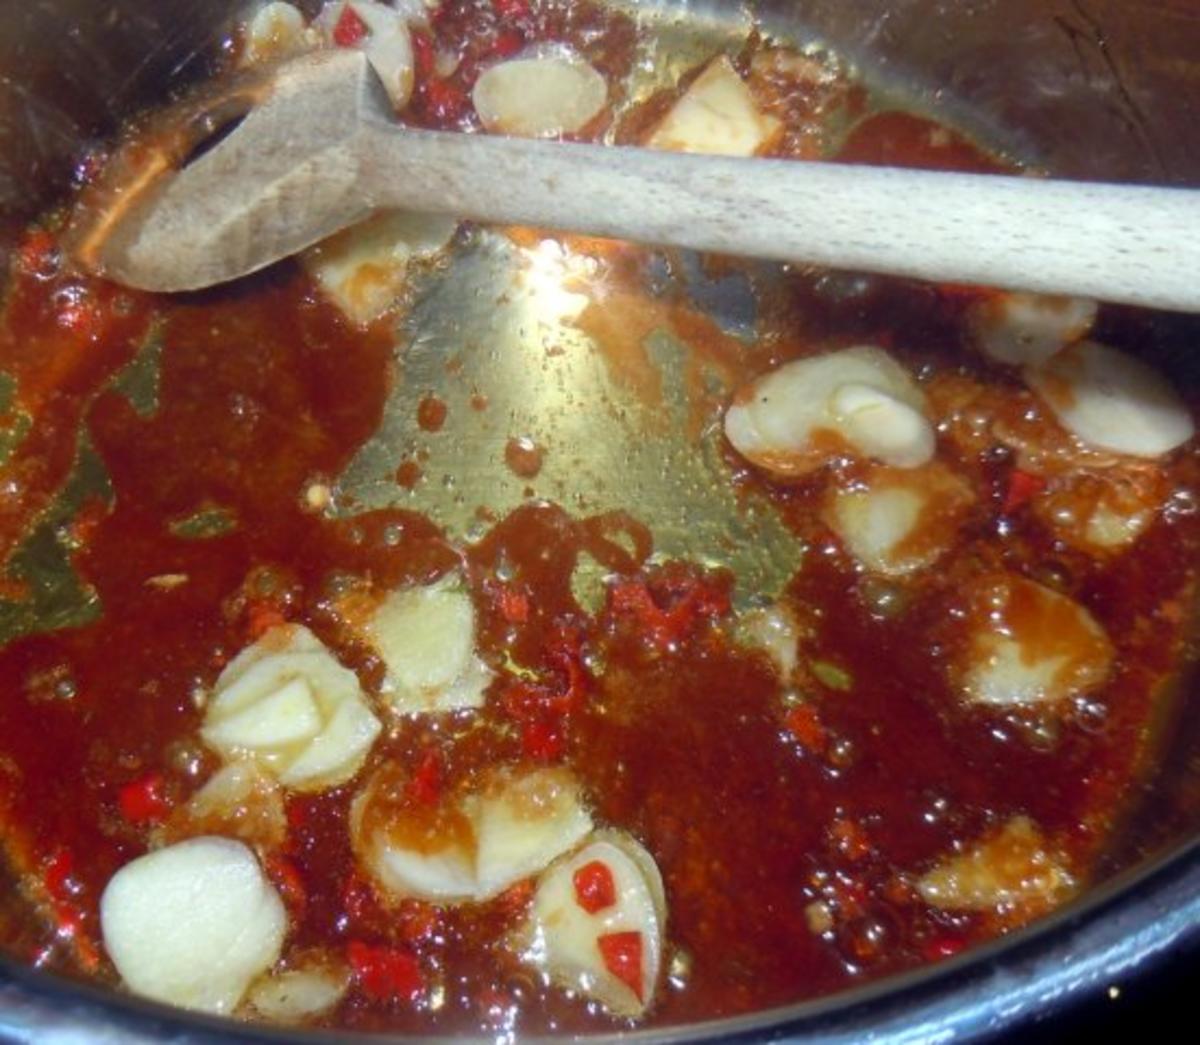 Würzige Hähnchenbrust auf Tomaten-Joghurt-Sauce mit Basmati-Reis - Rezept - Bild Nr. 5